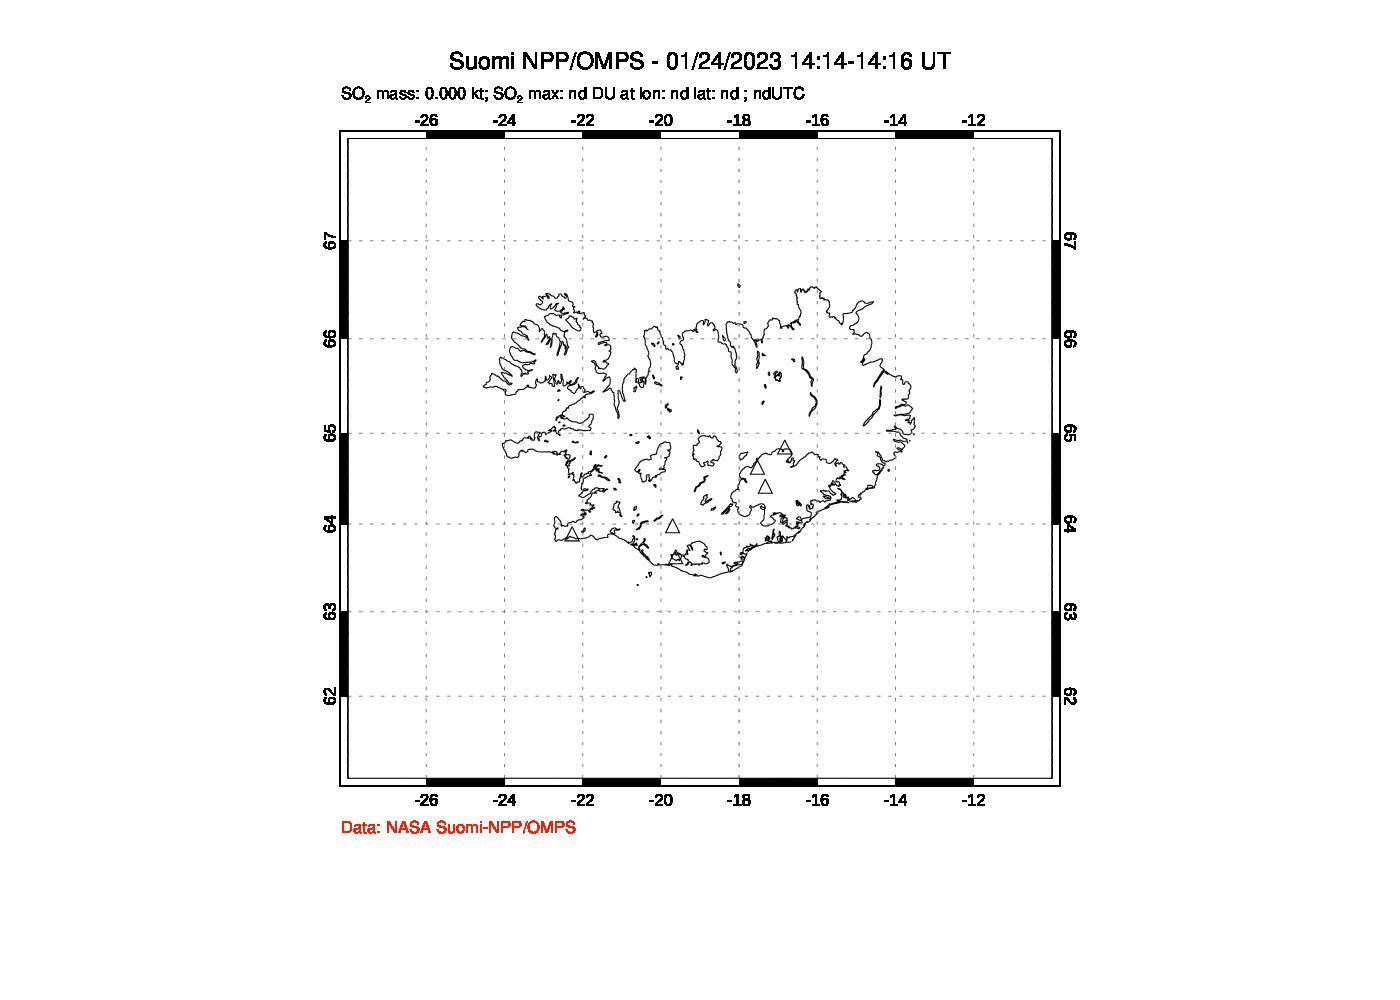 A sulfur dioxide image over Iceland on Jan 24, 2023.